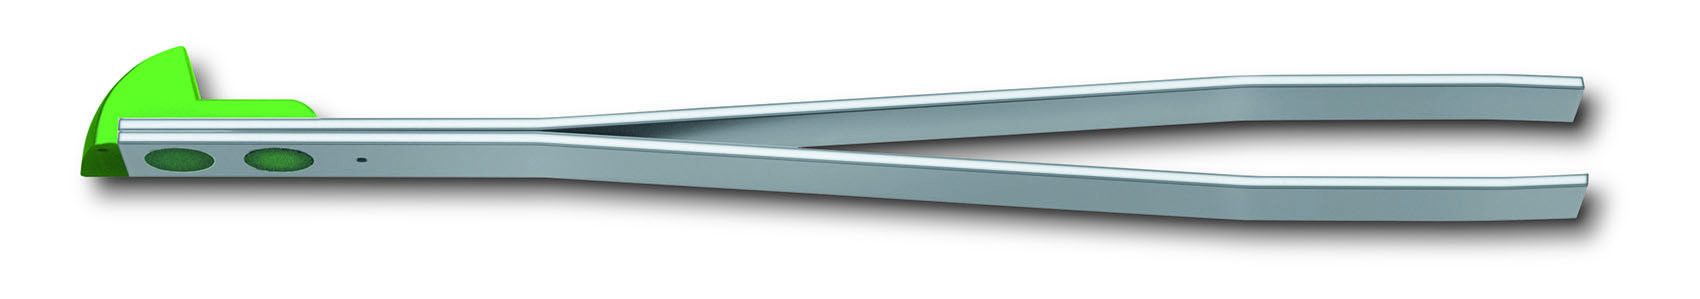 Пинцет для ножей Victorinox (A.6142.4.10) серебристый/зеленый